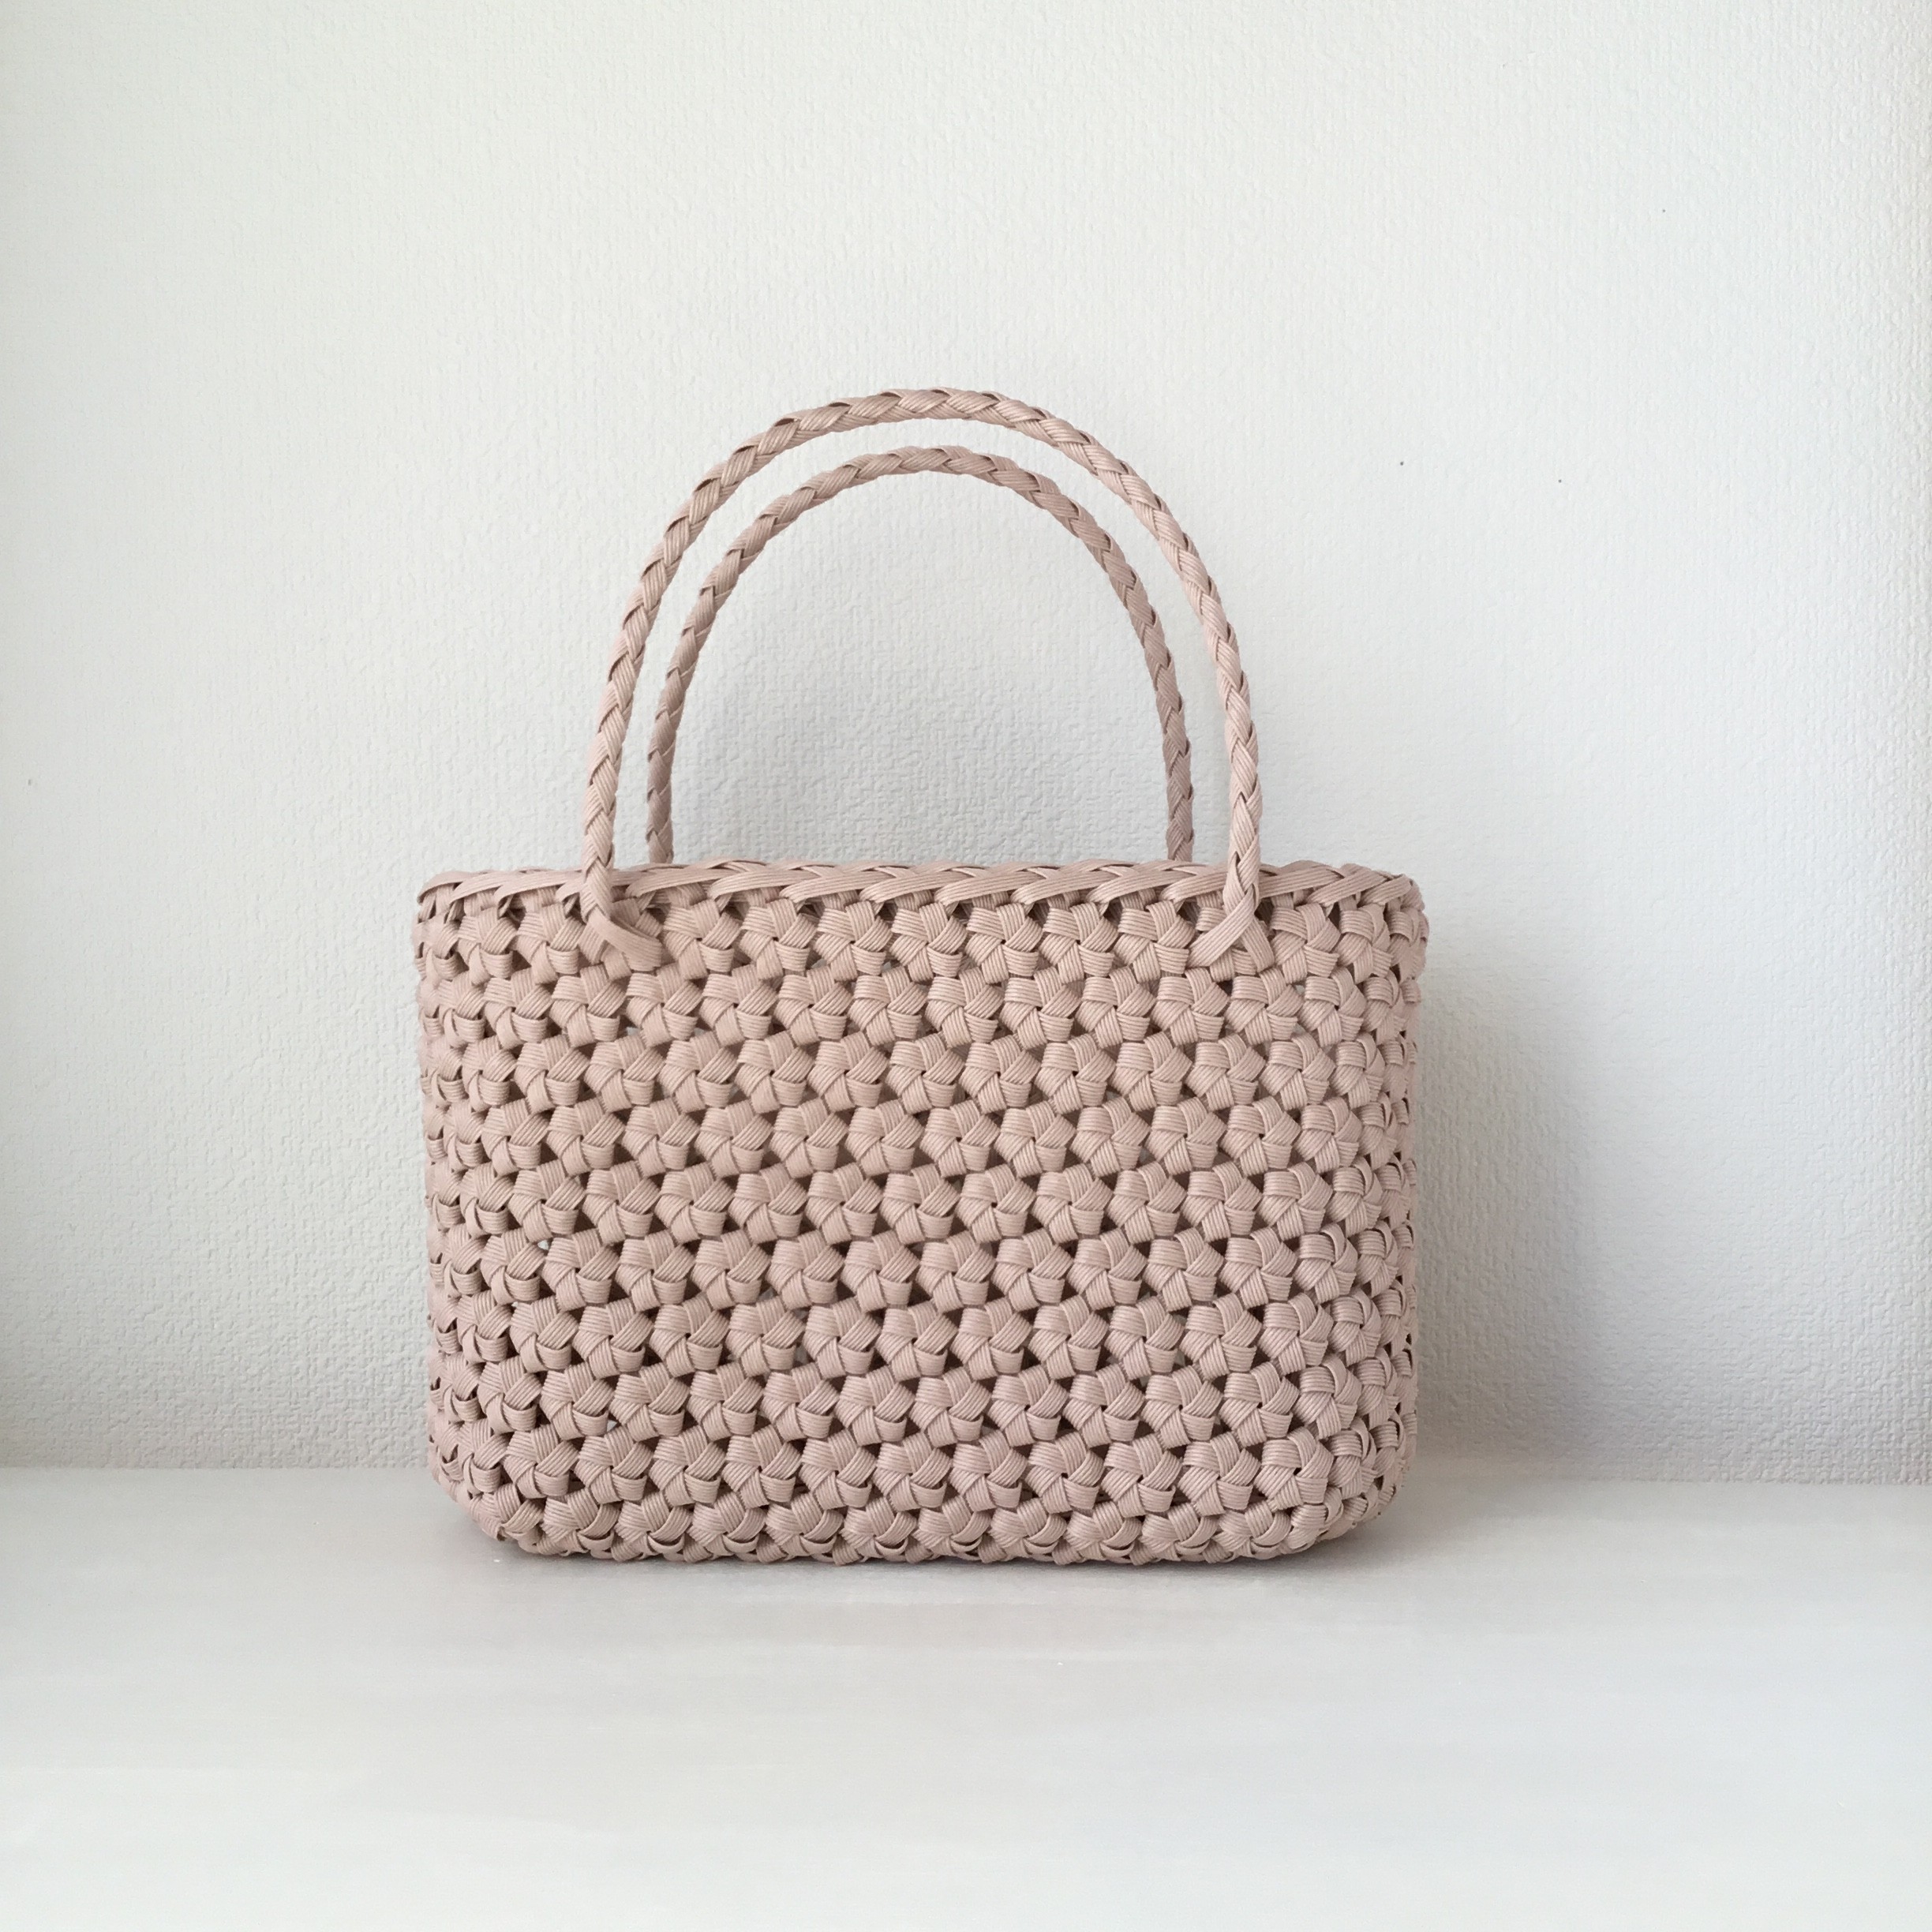 クラフトで作った花結び編みかごバッグ(内布付き) - バッグ